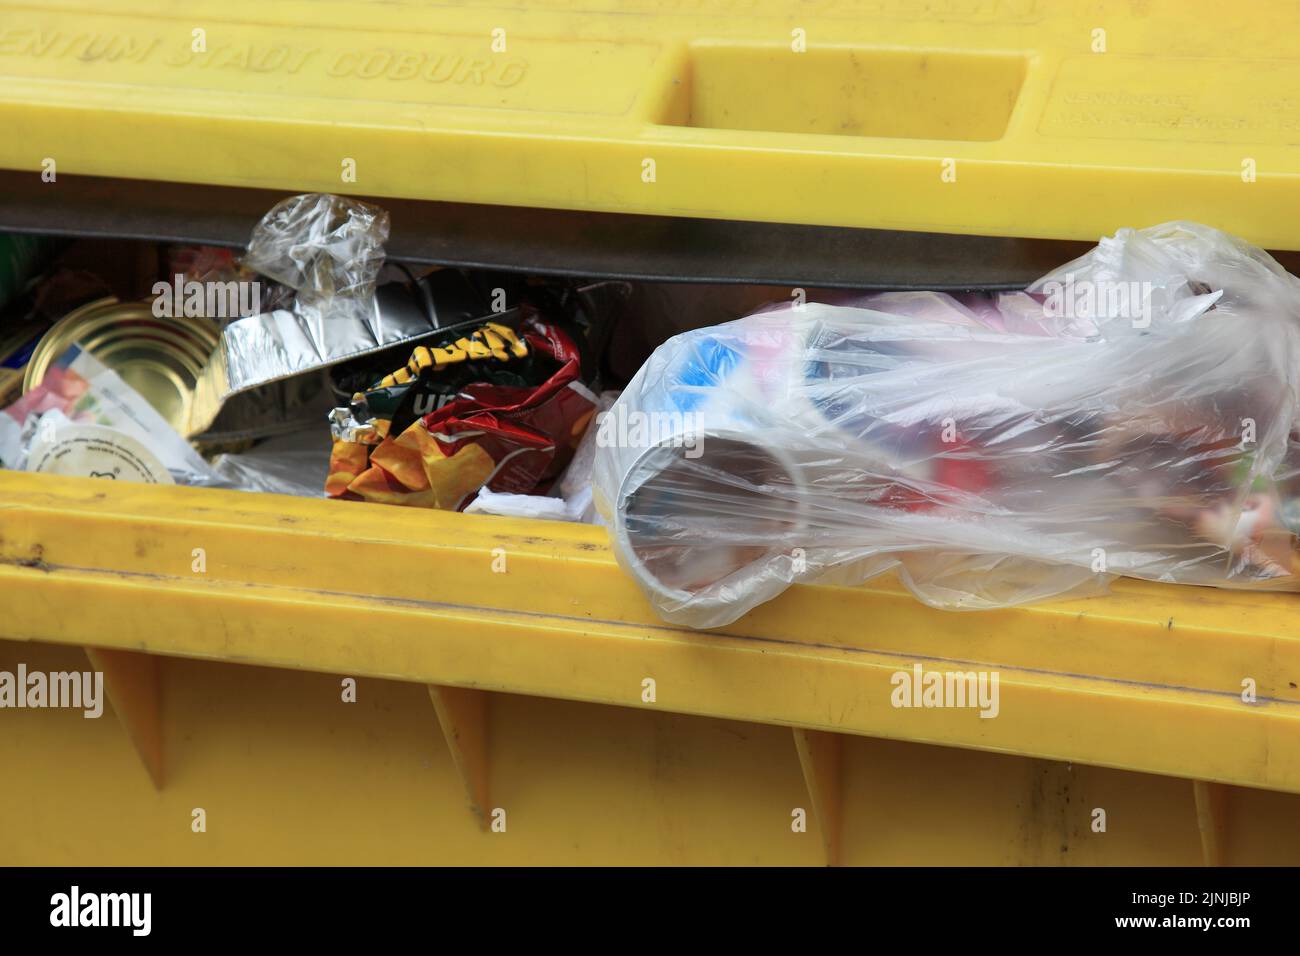 Müllsammlung, gelber Abfallcontainer für Verpackungsabfälle zur Verwendung im Recycling, Kunststoffverpackungen / collecte des déchets, Yellow Waste con Banque D'Images